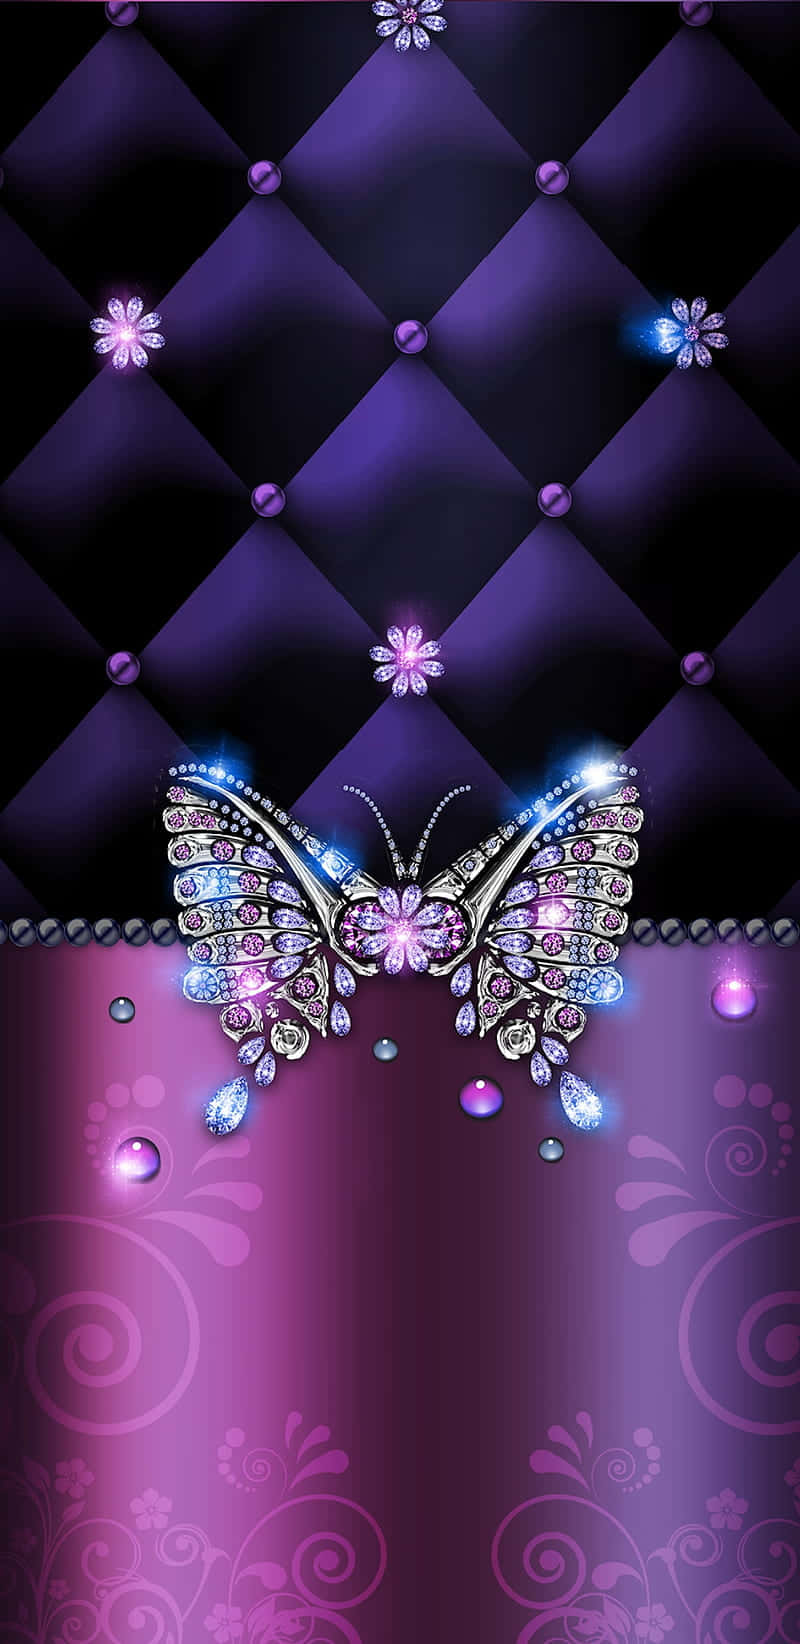 Genießensie Die Schönheit Eines Lila Schmetterlings, Während Sie Sich Mit Der Welt Verbinden. Wallpaper